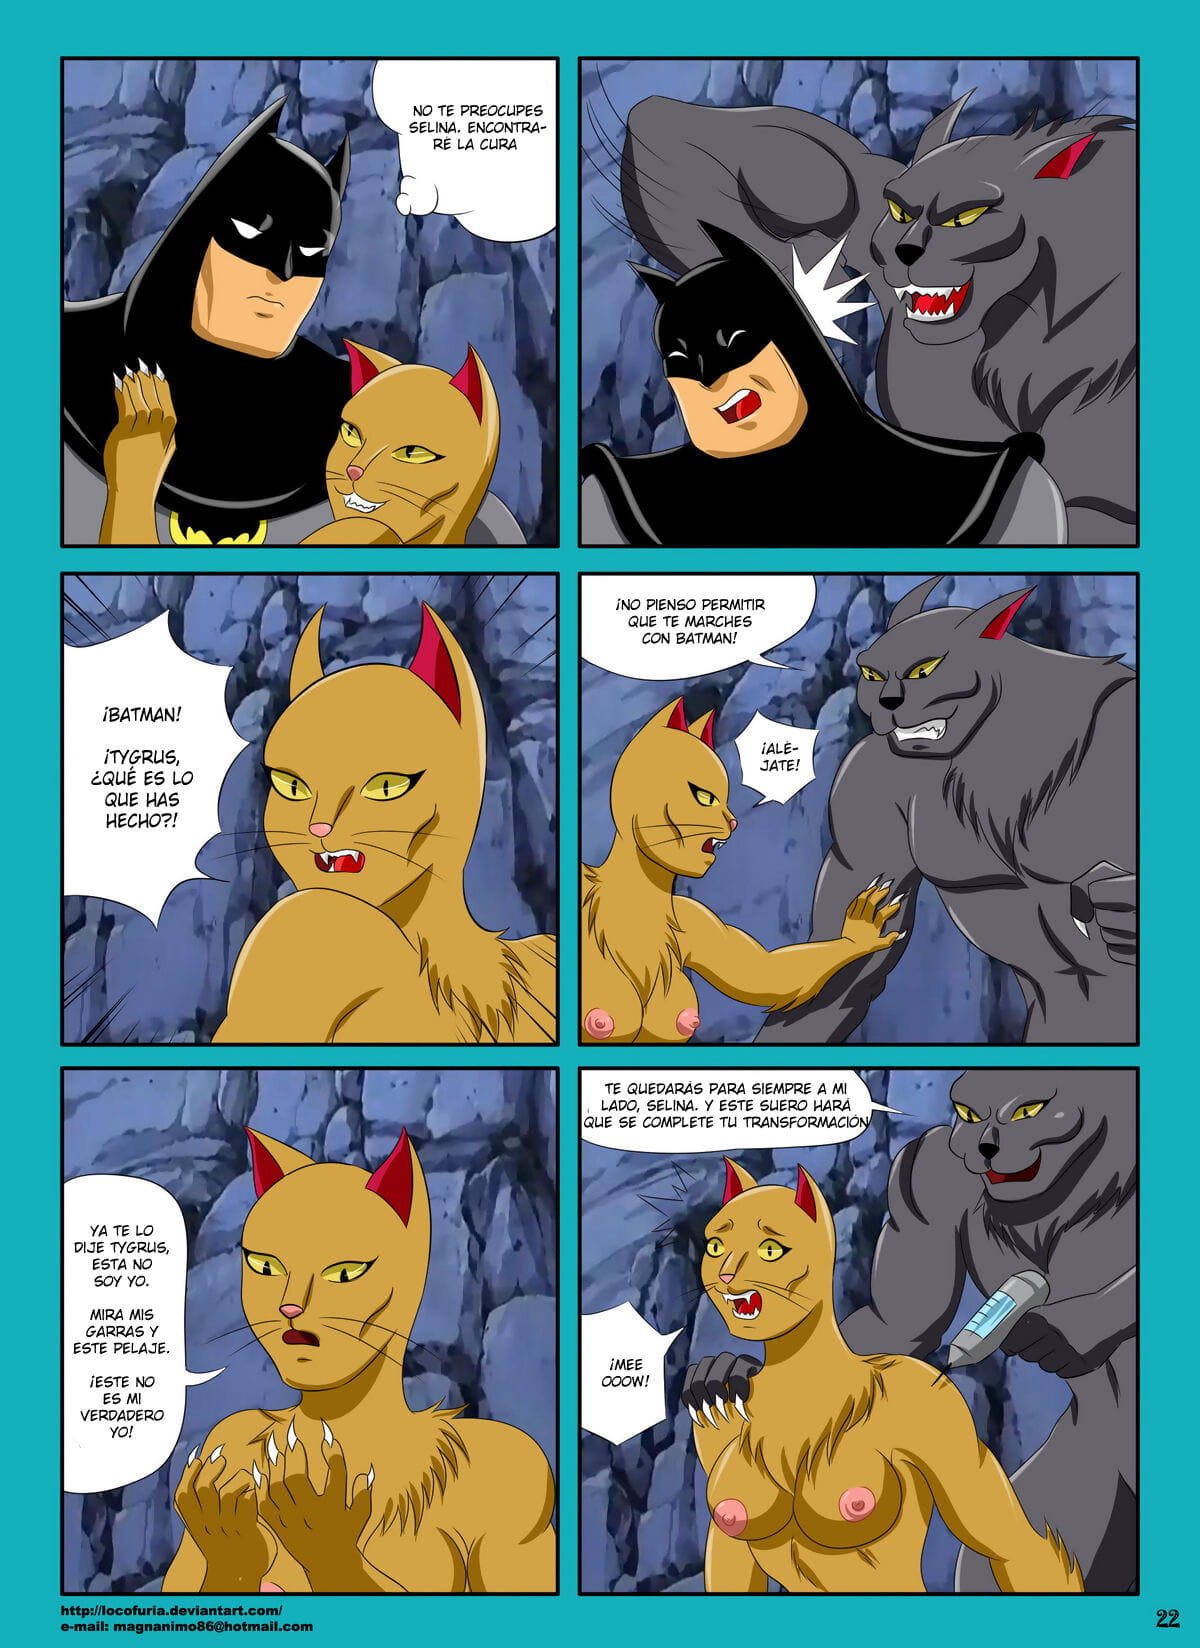 القطط instincs instintos felinos page 1